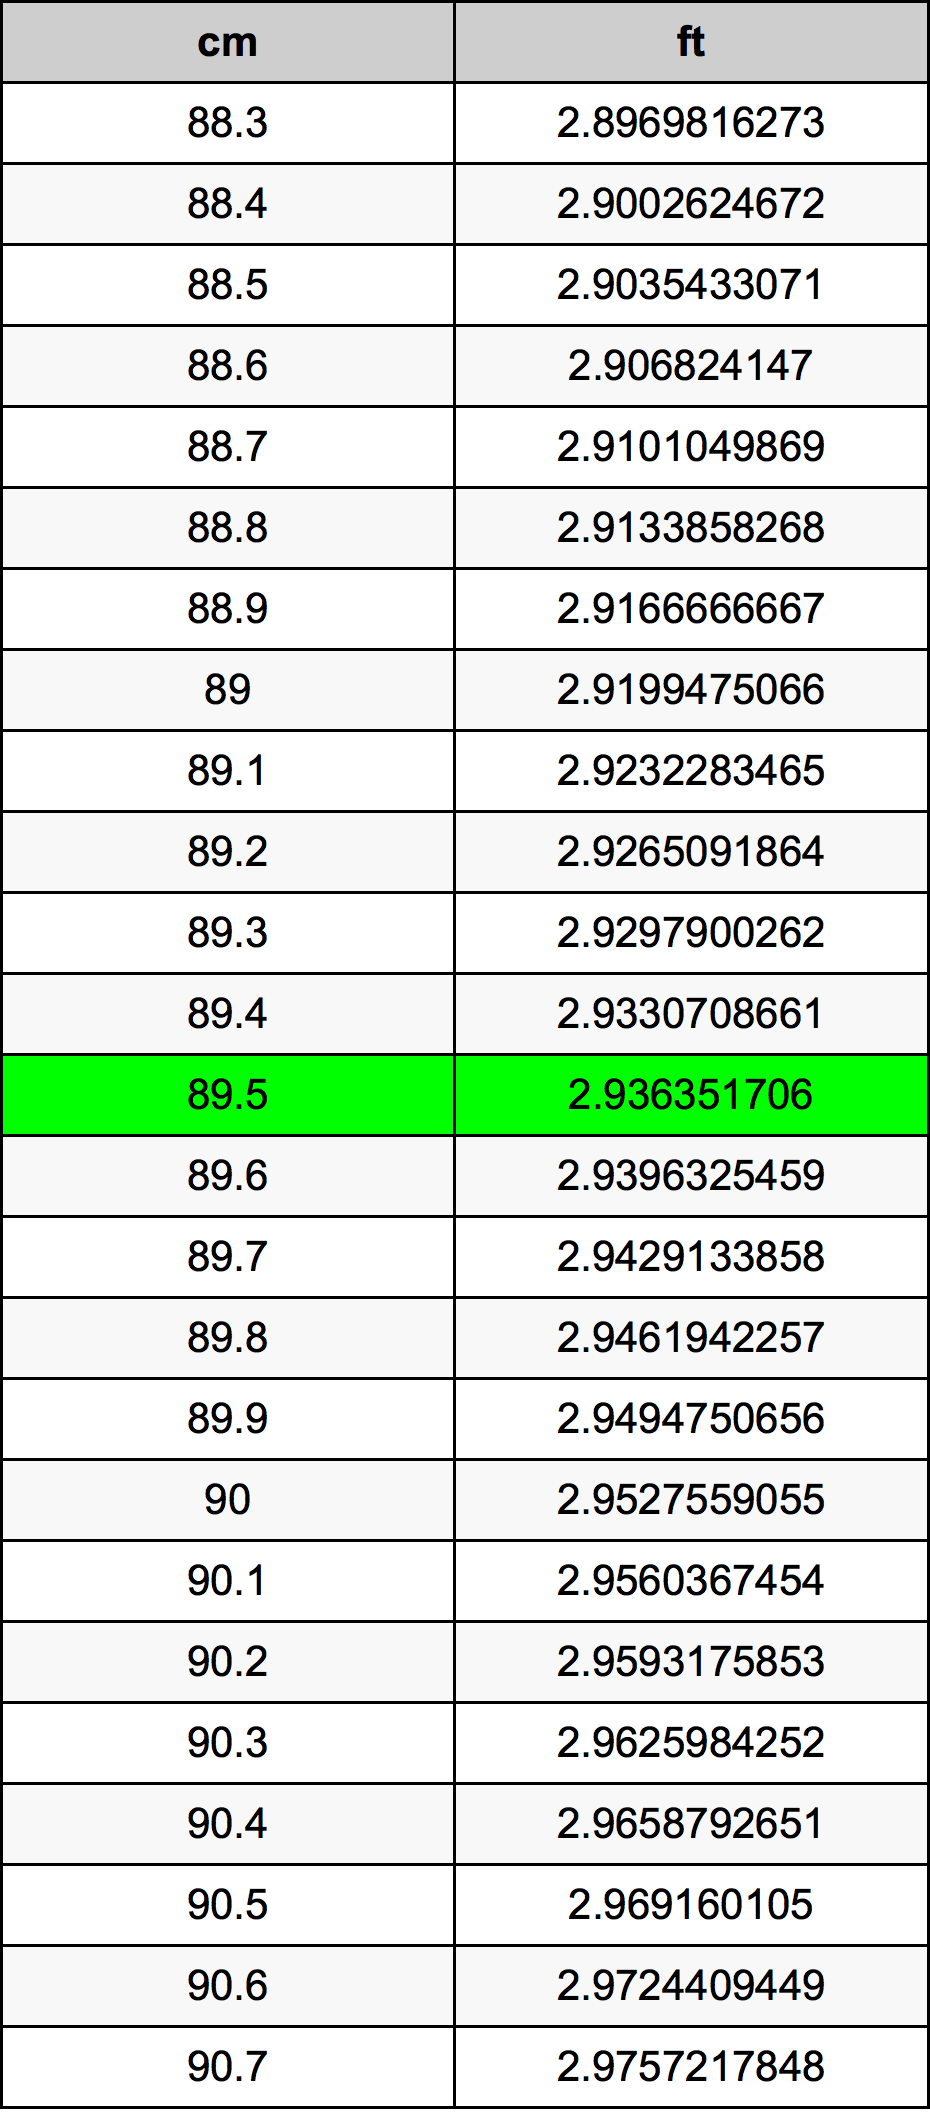 89.5 Centiméter átszámítási táblázat